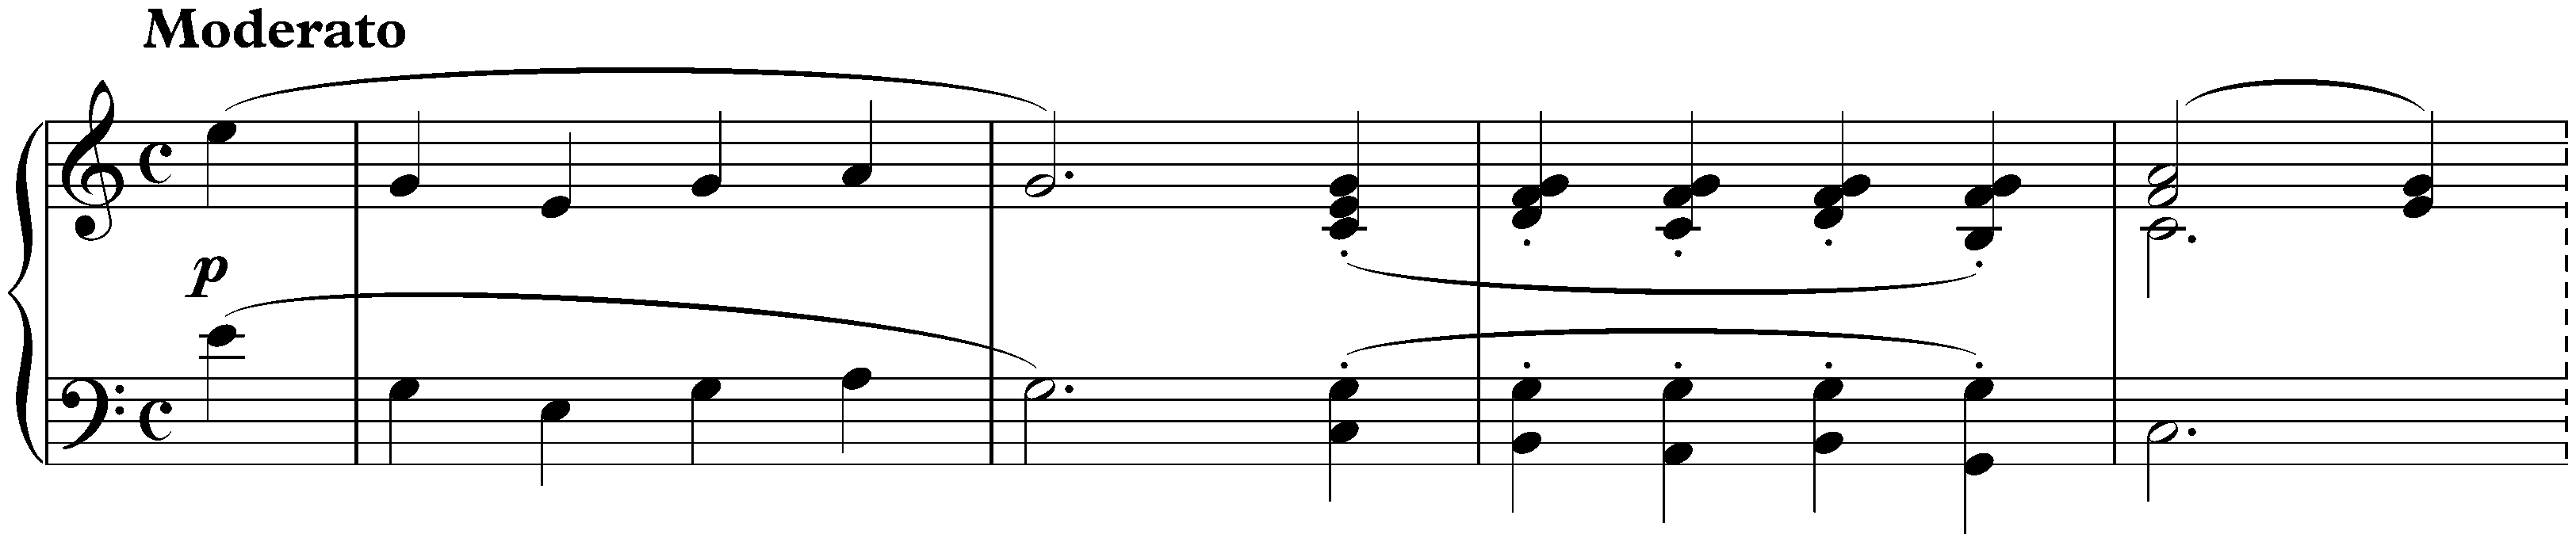 Sonata in C major, D 840; 1. Moderato